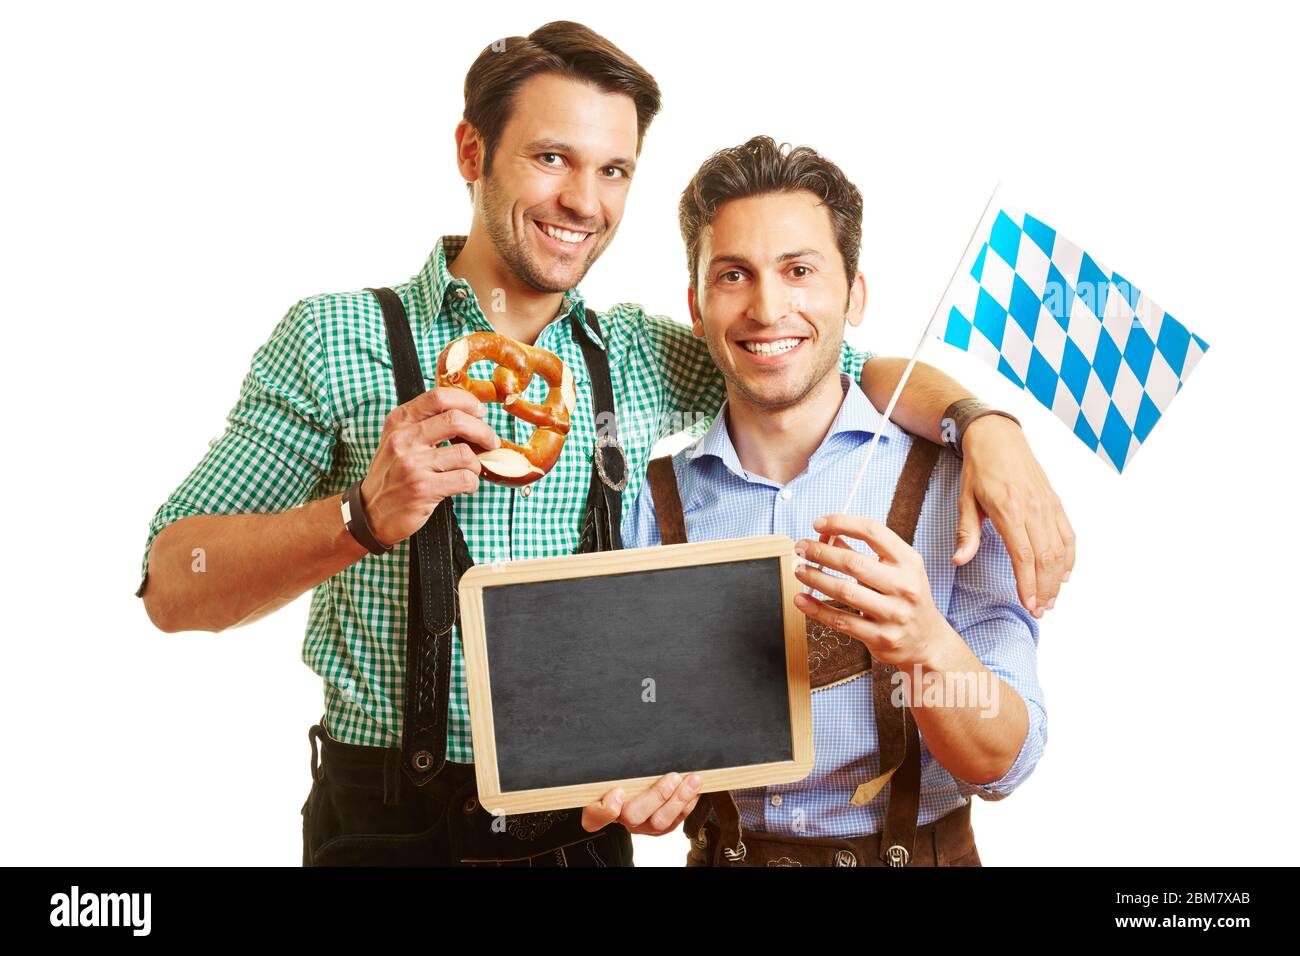 Zwei Männer in Lederhosen halten Brezeln und eine bayerische Flagge und eine Tafel Stockfoto